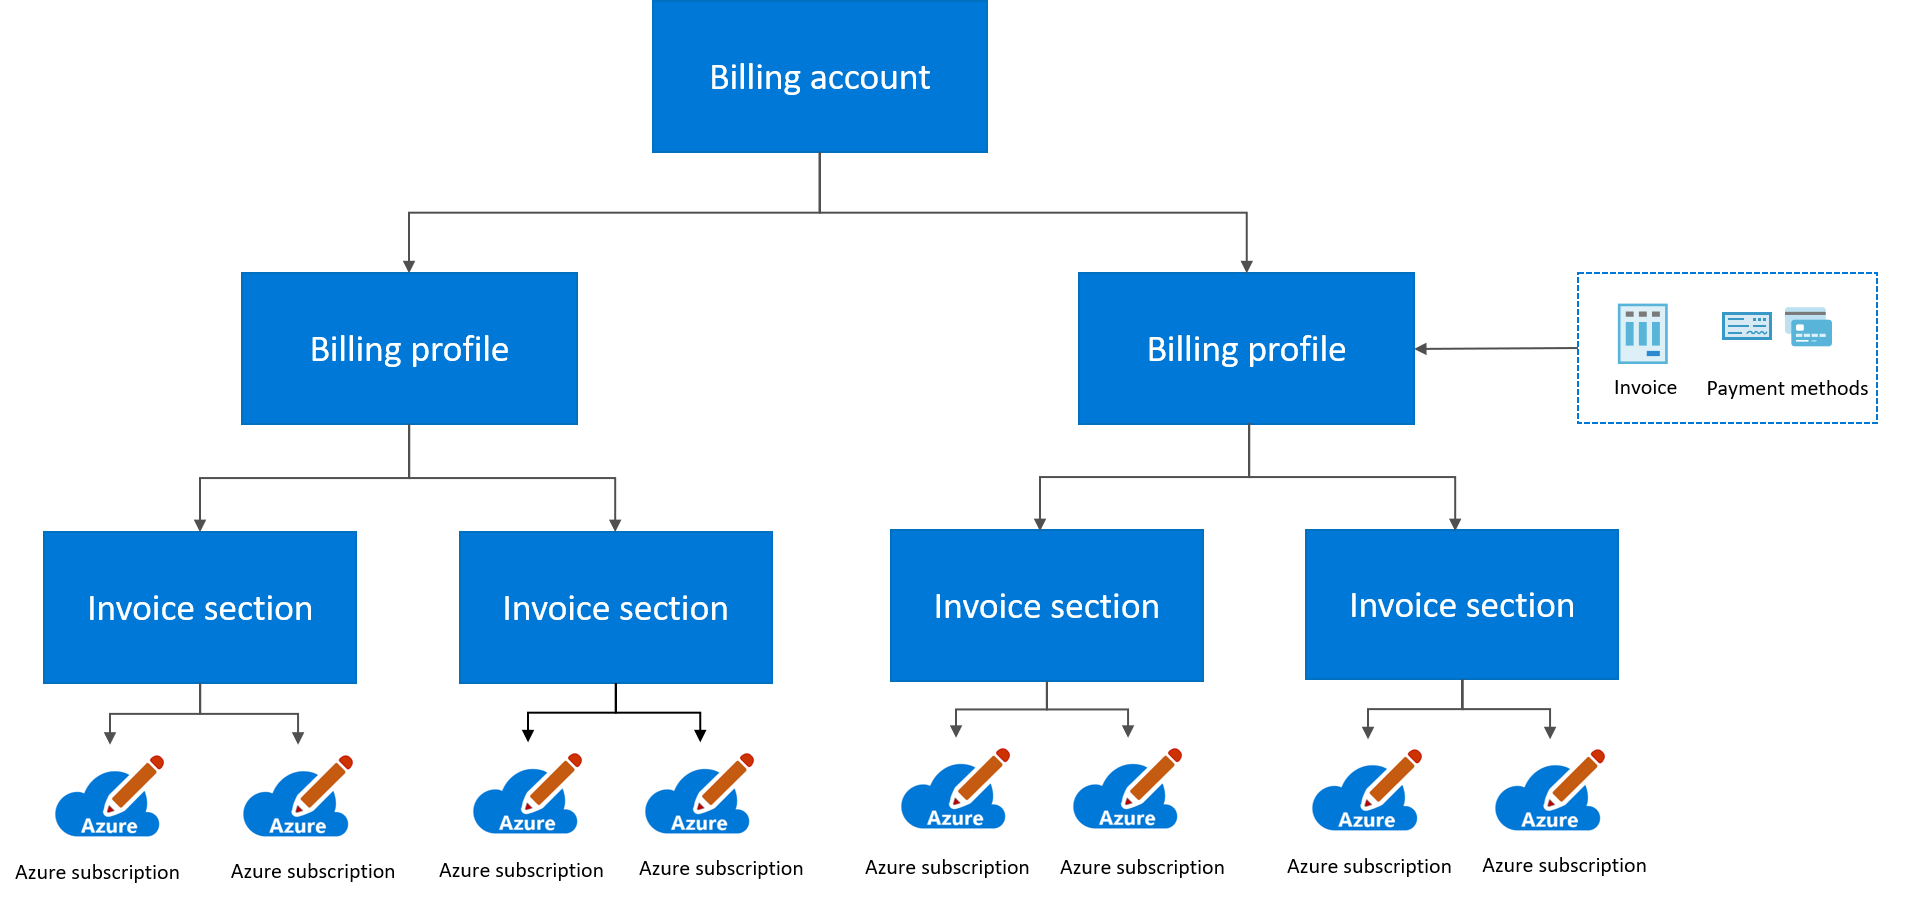 Diagramme illustrant la hiérarchie de facturation pour un Contrat client Microsoft.